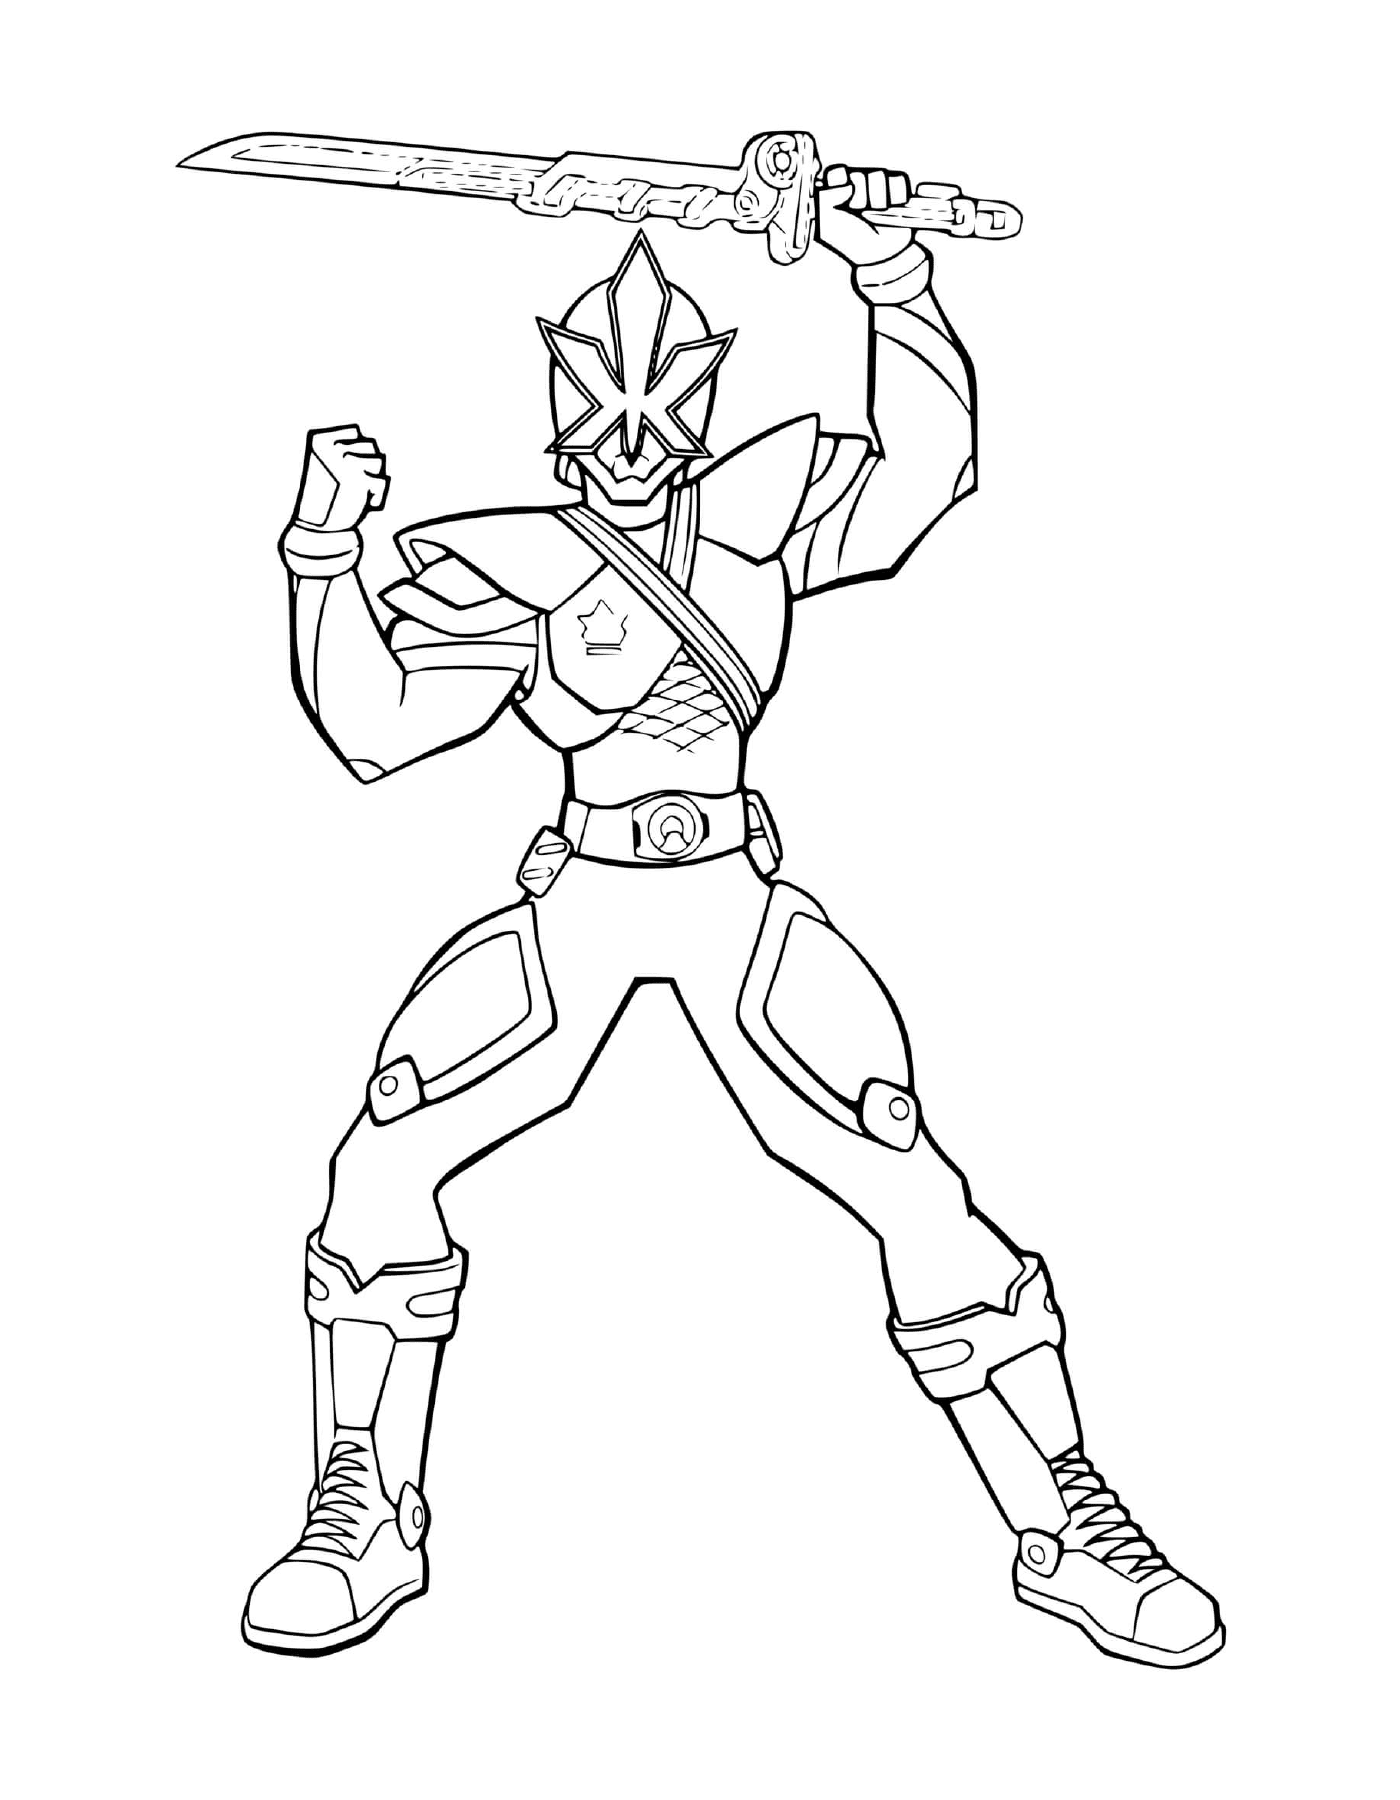   Power Ranger de Ninja Steel 